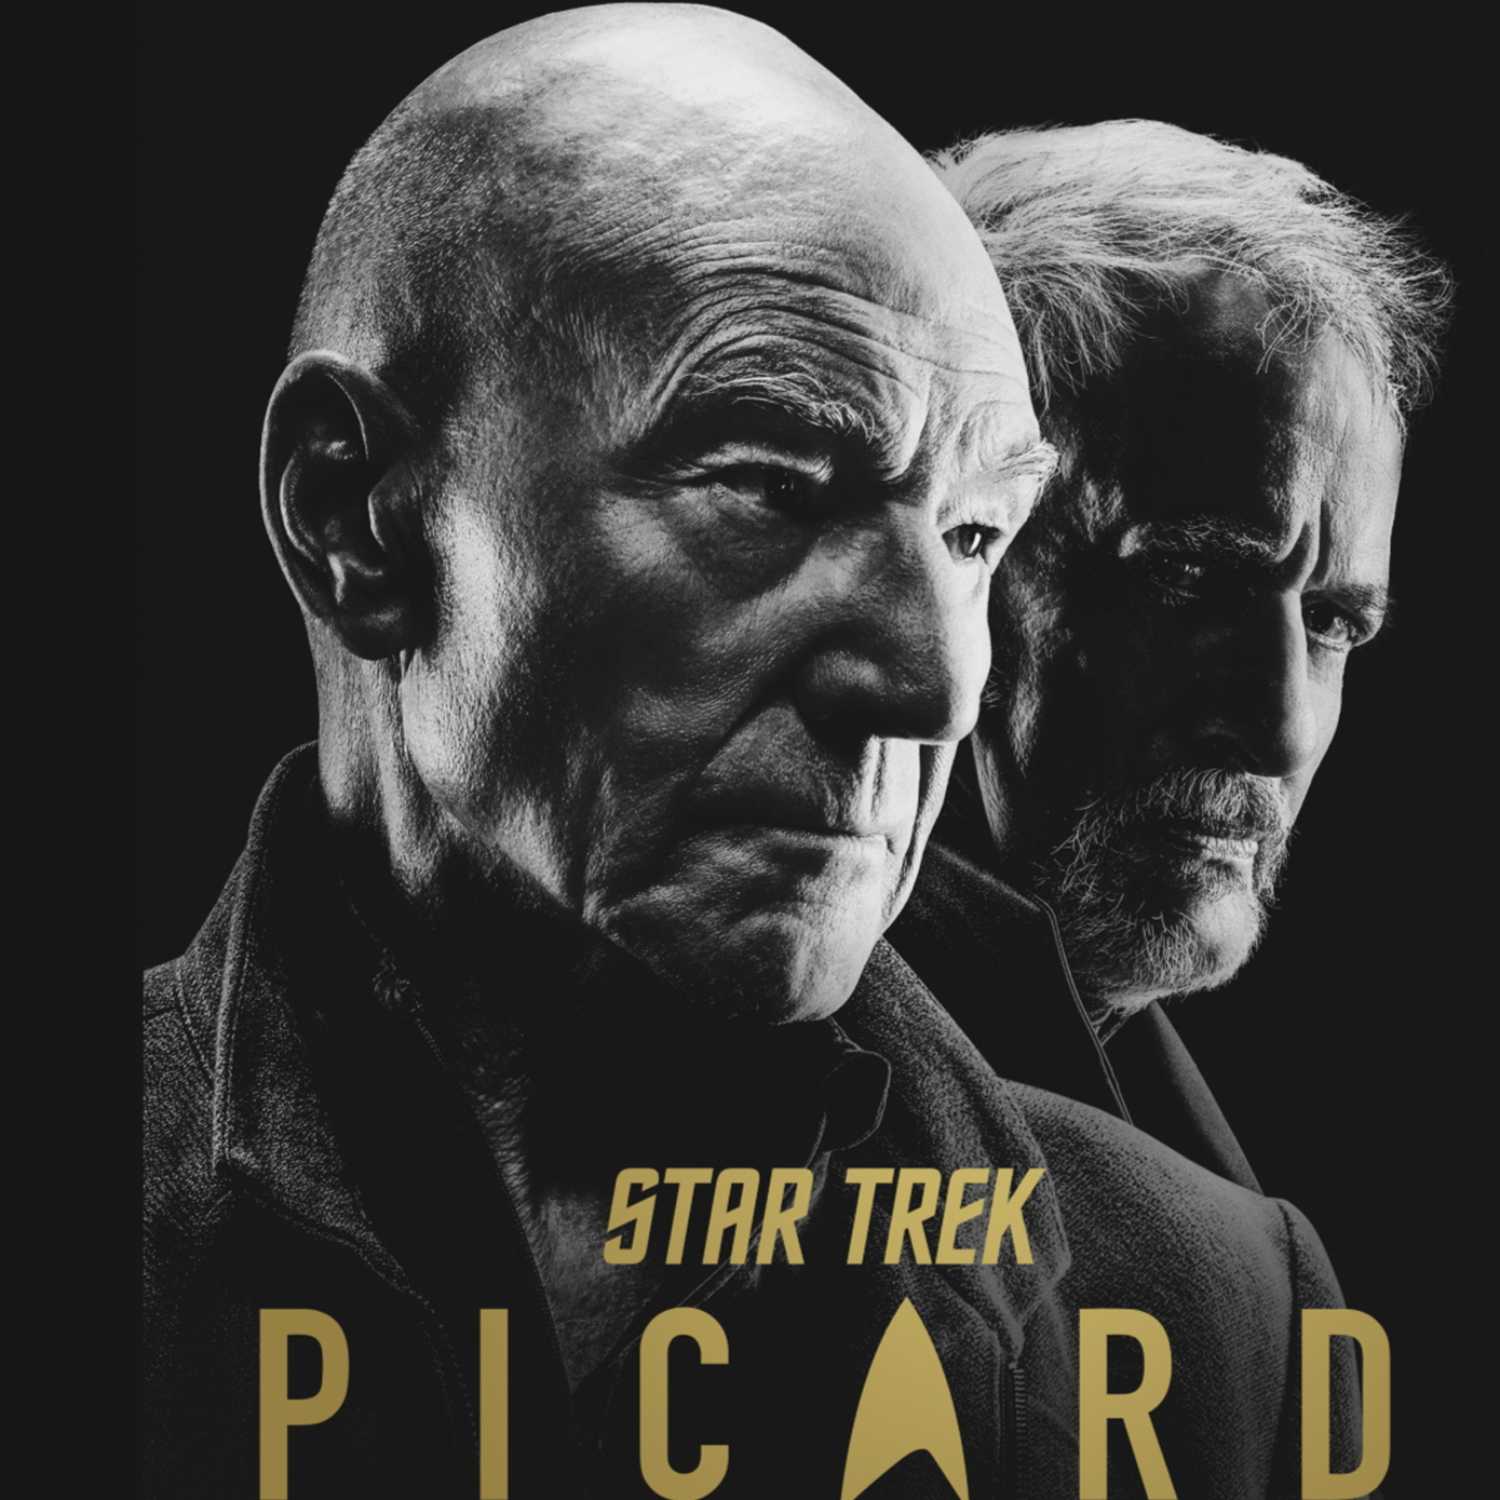 Bonus Episode: Star Trek Picard S2E9